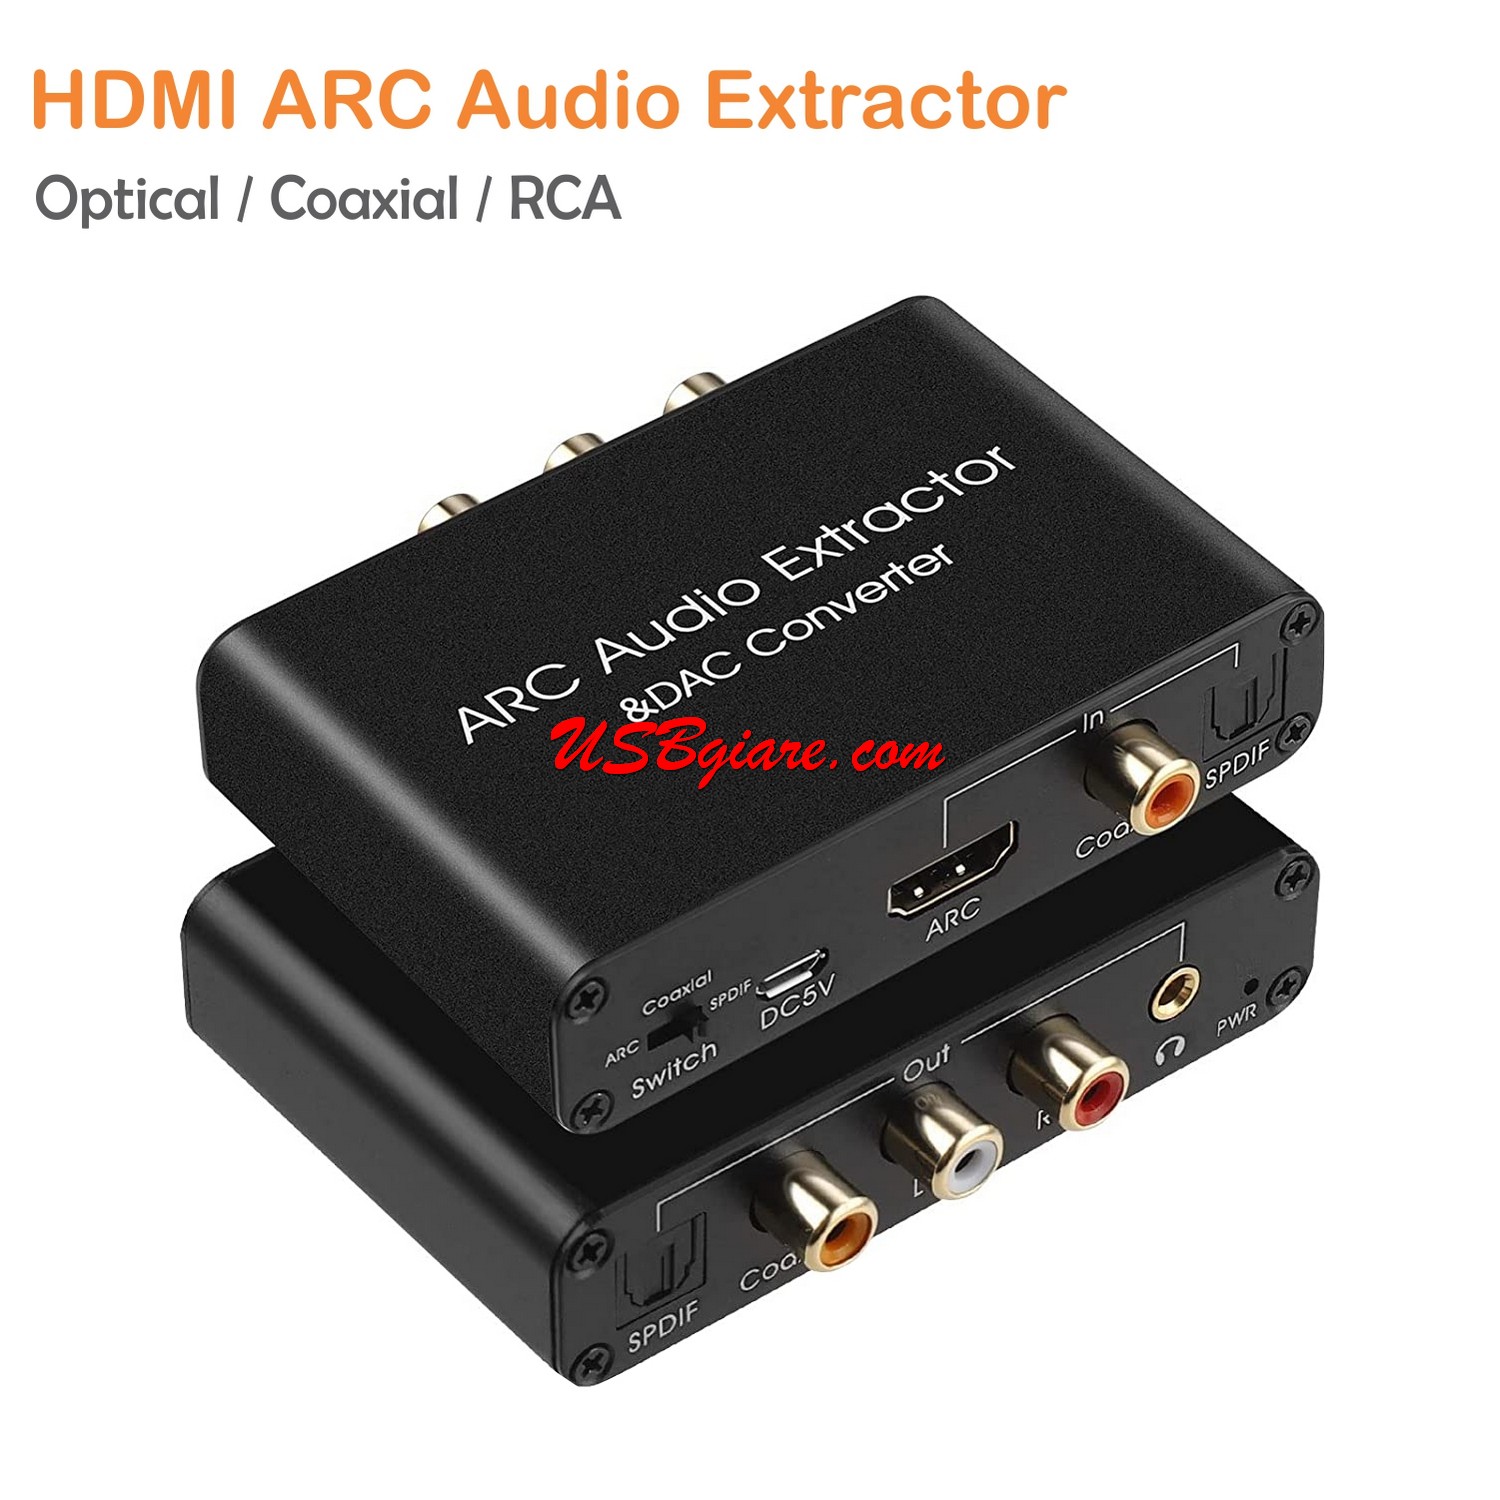 Hdmi Arc Audio Extractor - Xuất Âm Thanh Từ Cổng Hdmi Trên Tivi Sang Ampli  Cổng Bông Sen, Rca 3.5Mm, Optical Và Coaxial | Lazada.Vn